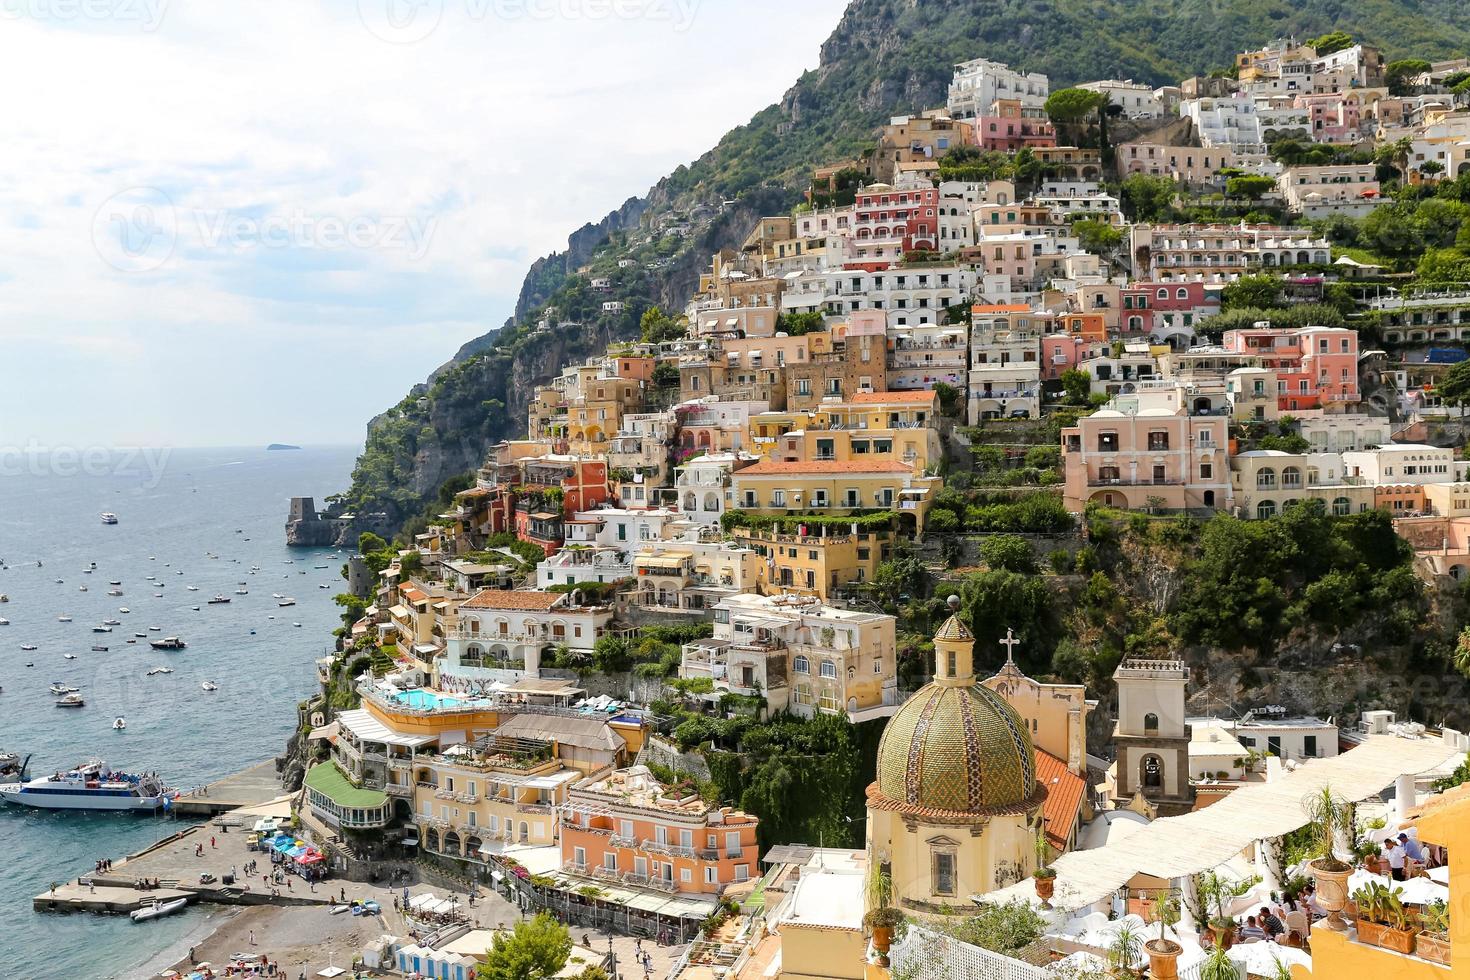 allmän utsikt över positano stad i Neapel, Italien foto